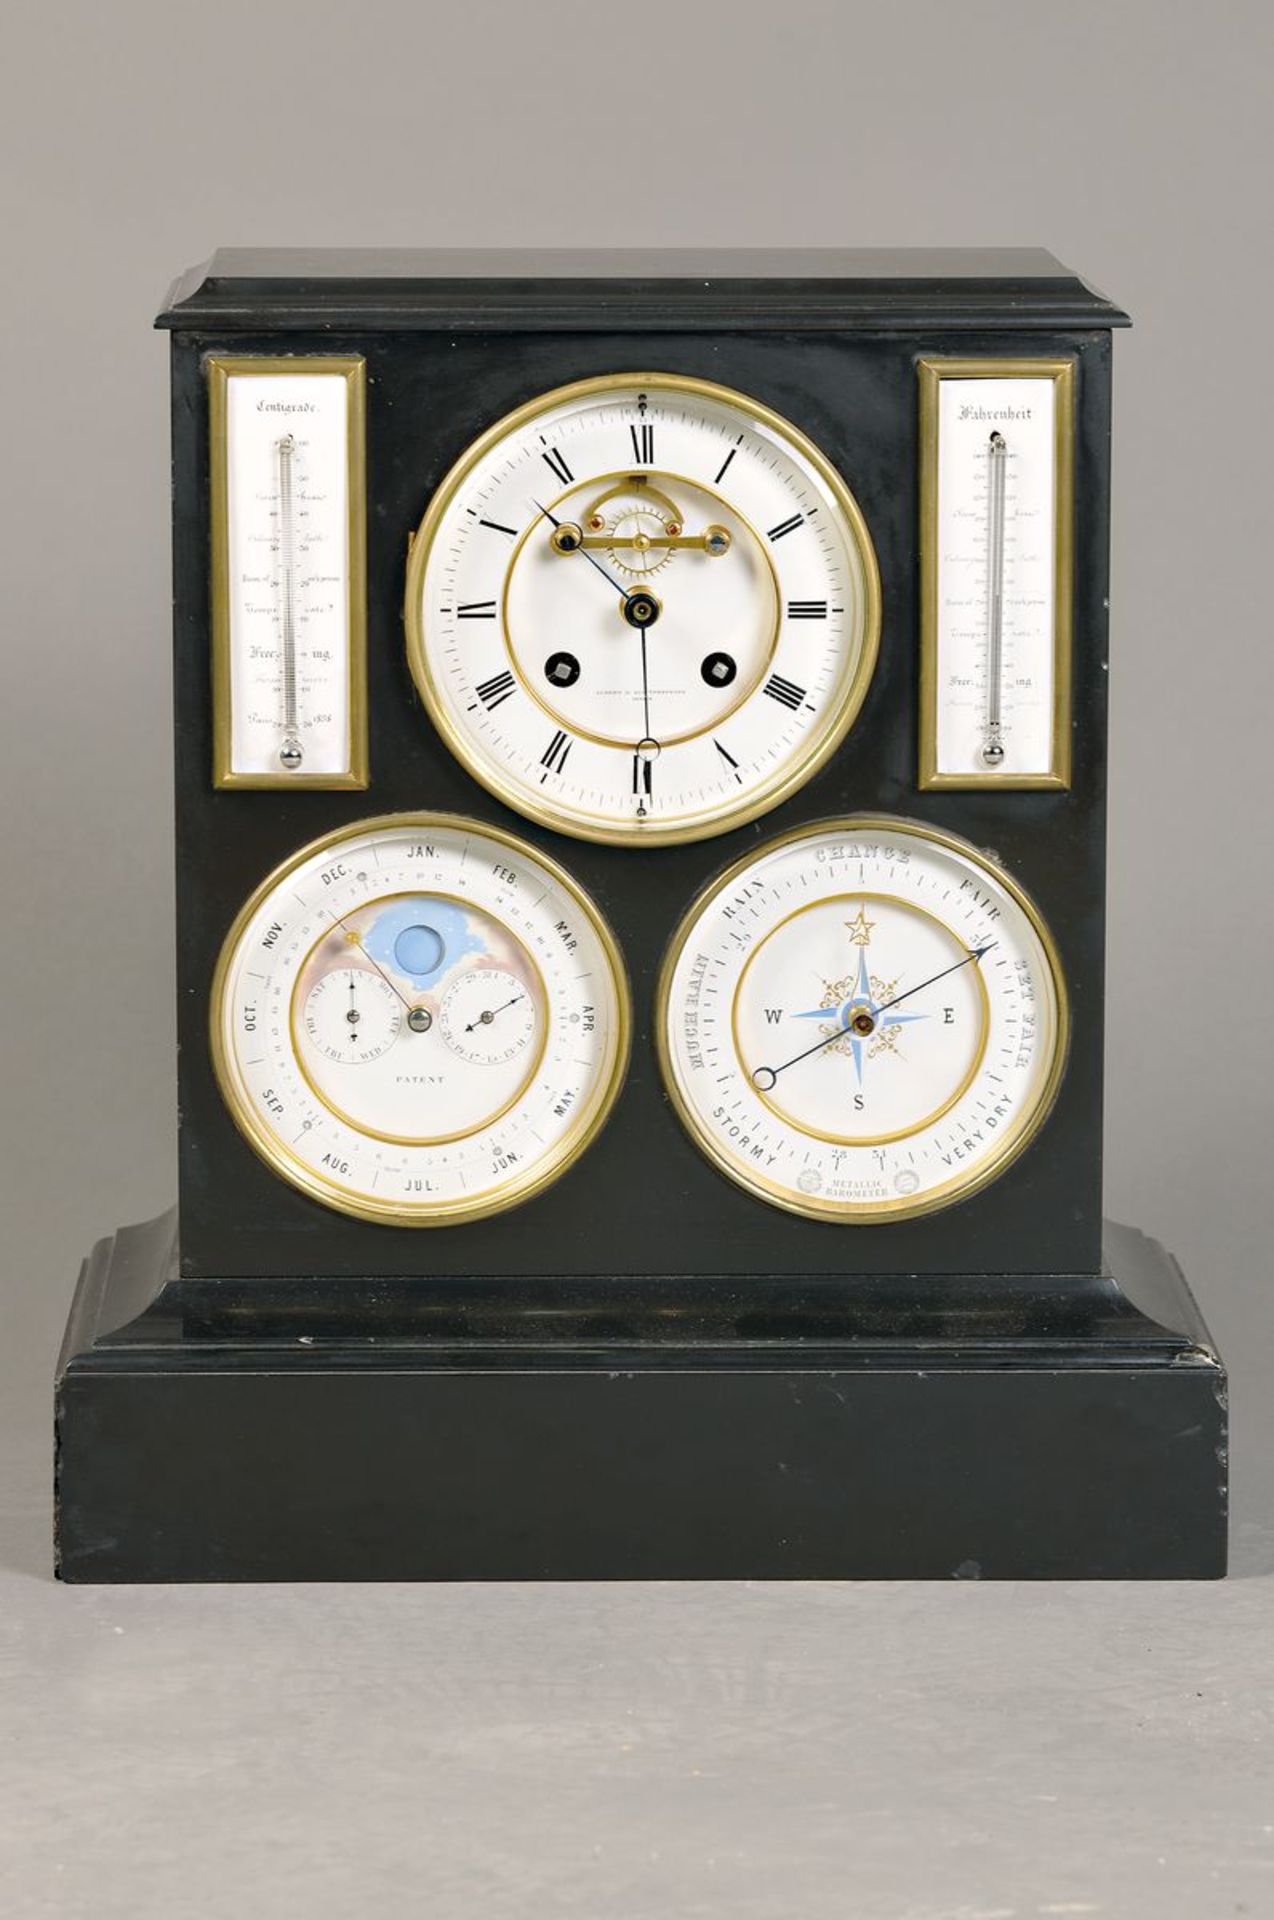 Tischuhr mit Kalendarium, Barometer u. Thermometer, Genf, Aubert&Klaftenberger, um 1900/20,